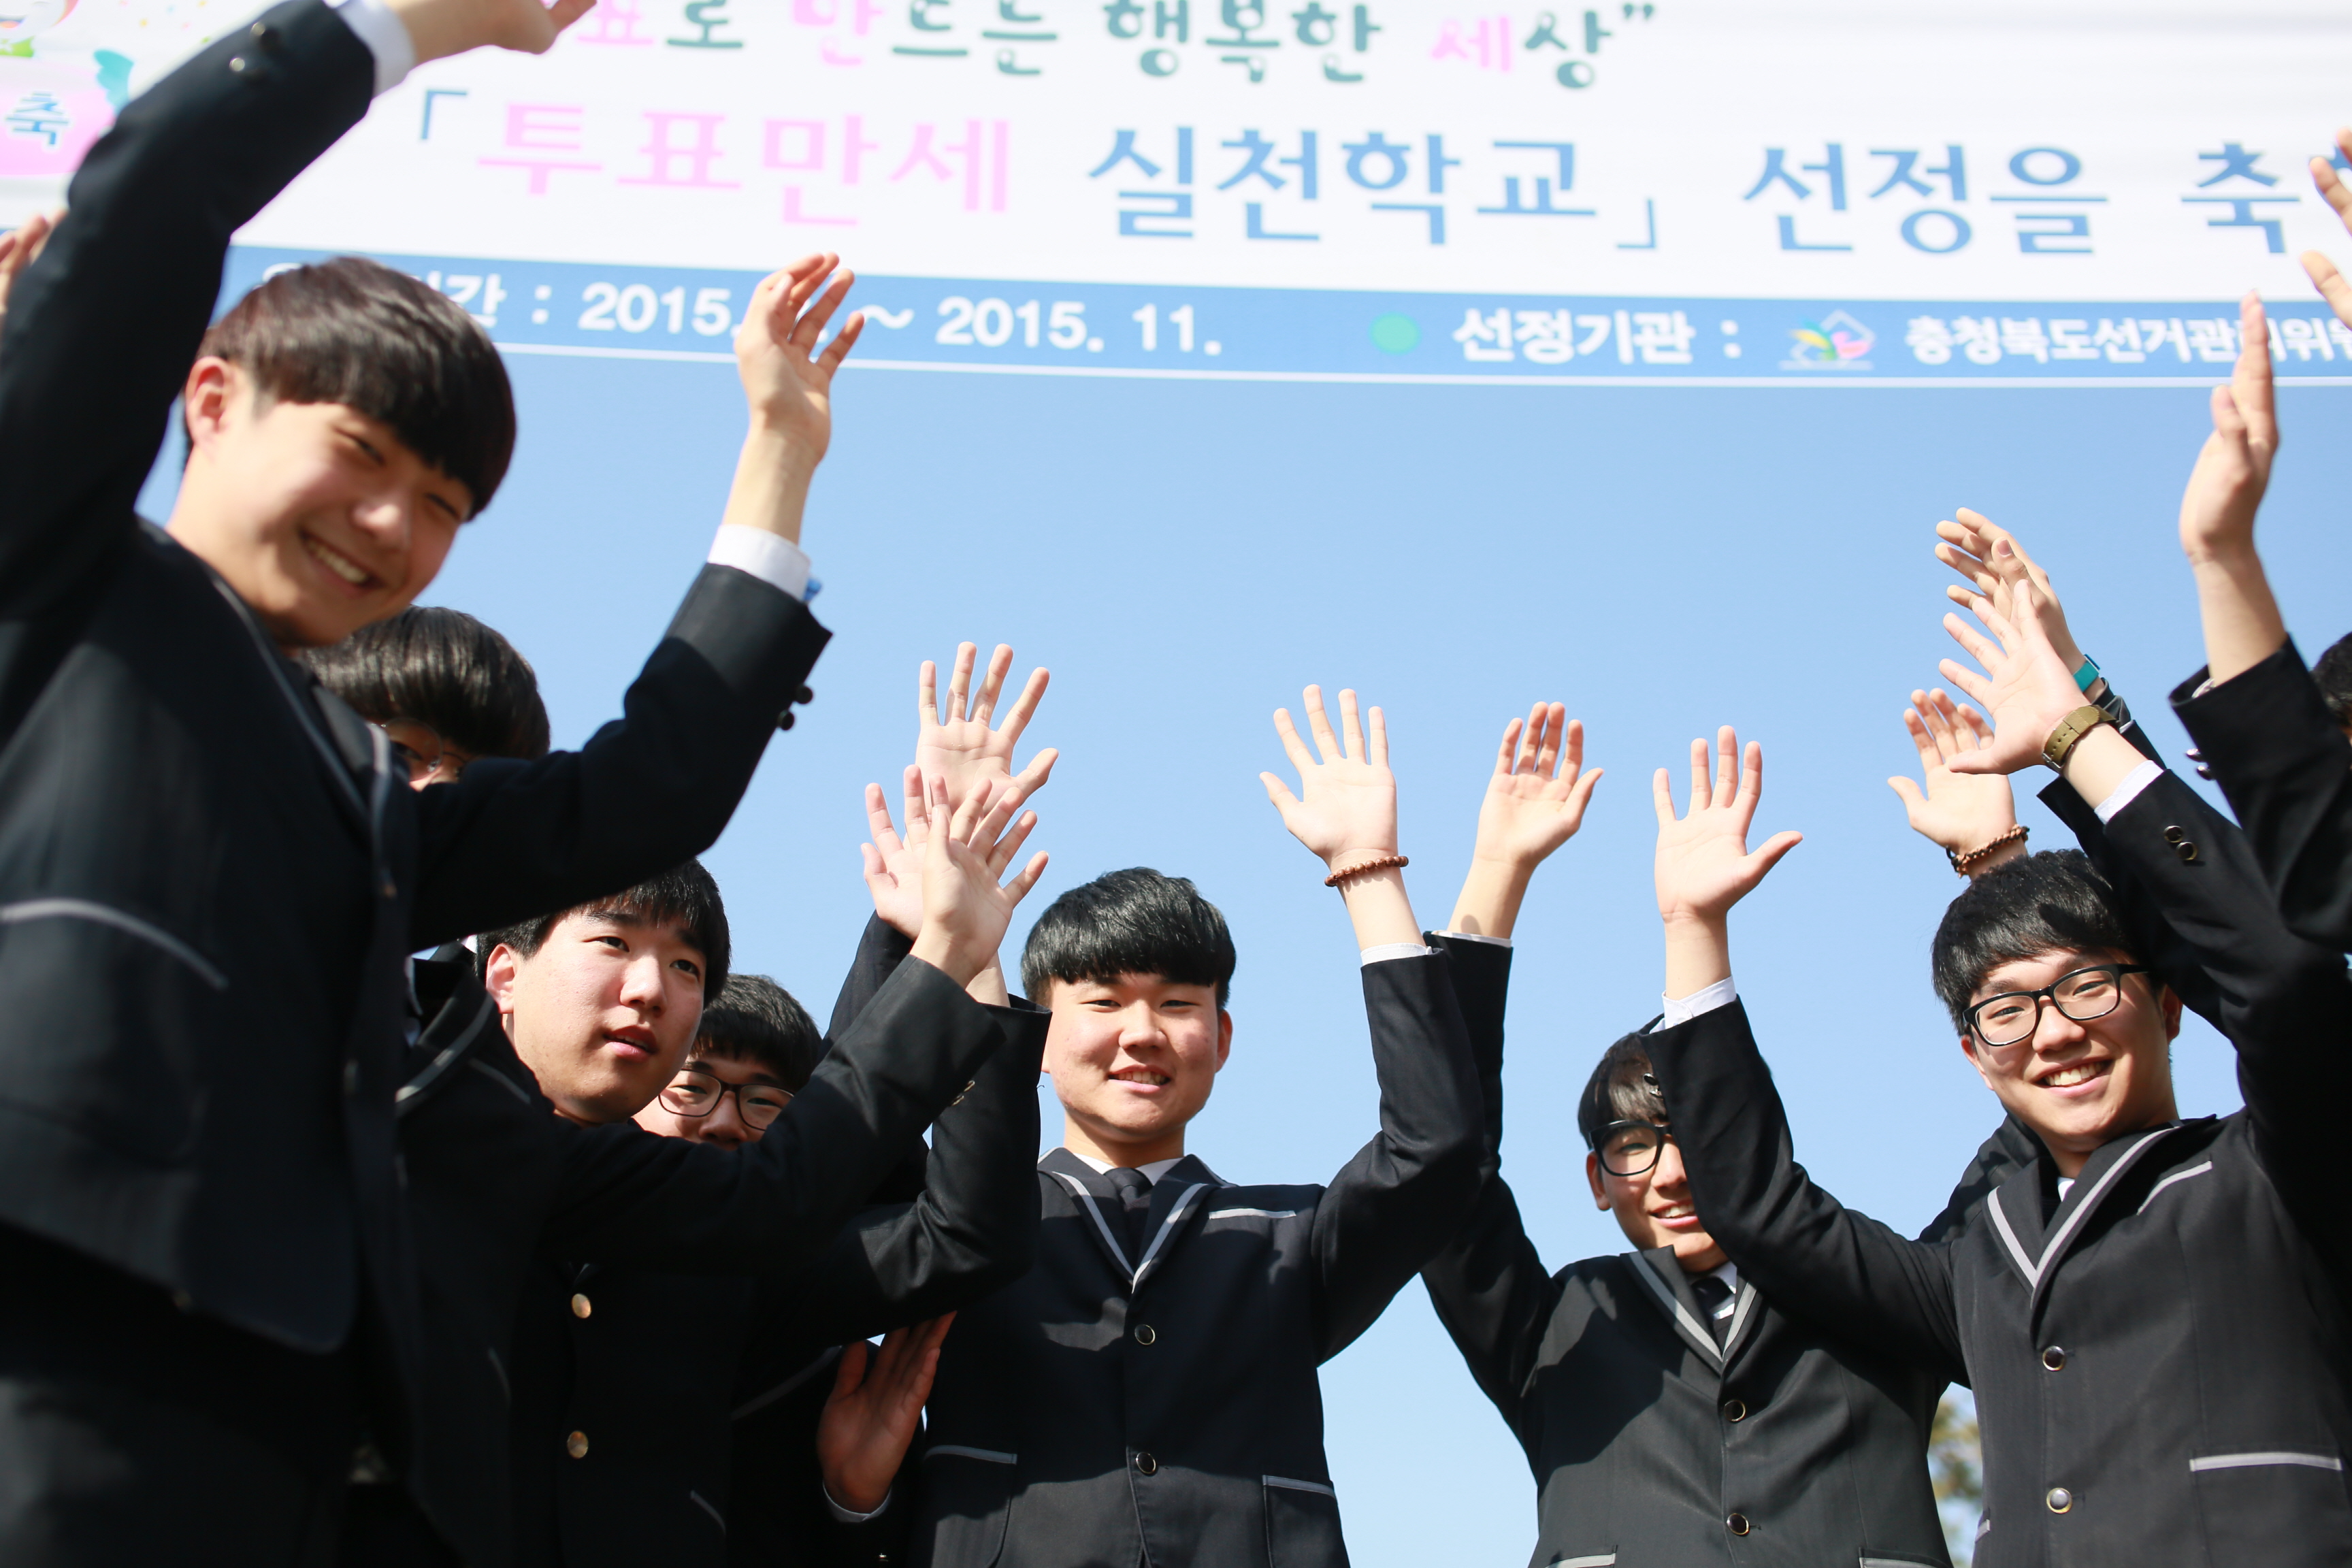 투표만세 실천학교로 선정된 제천제일고등학교 학생들이 정문앞에서 즐거워하는 모습